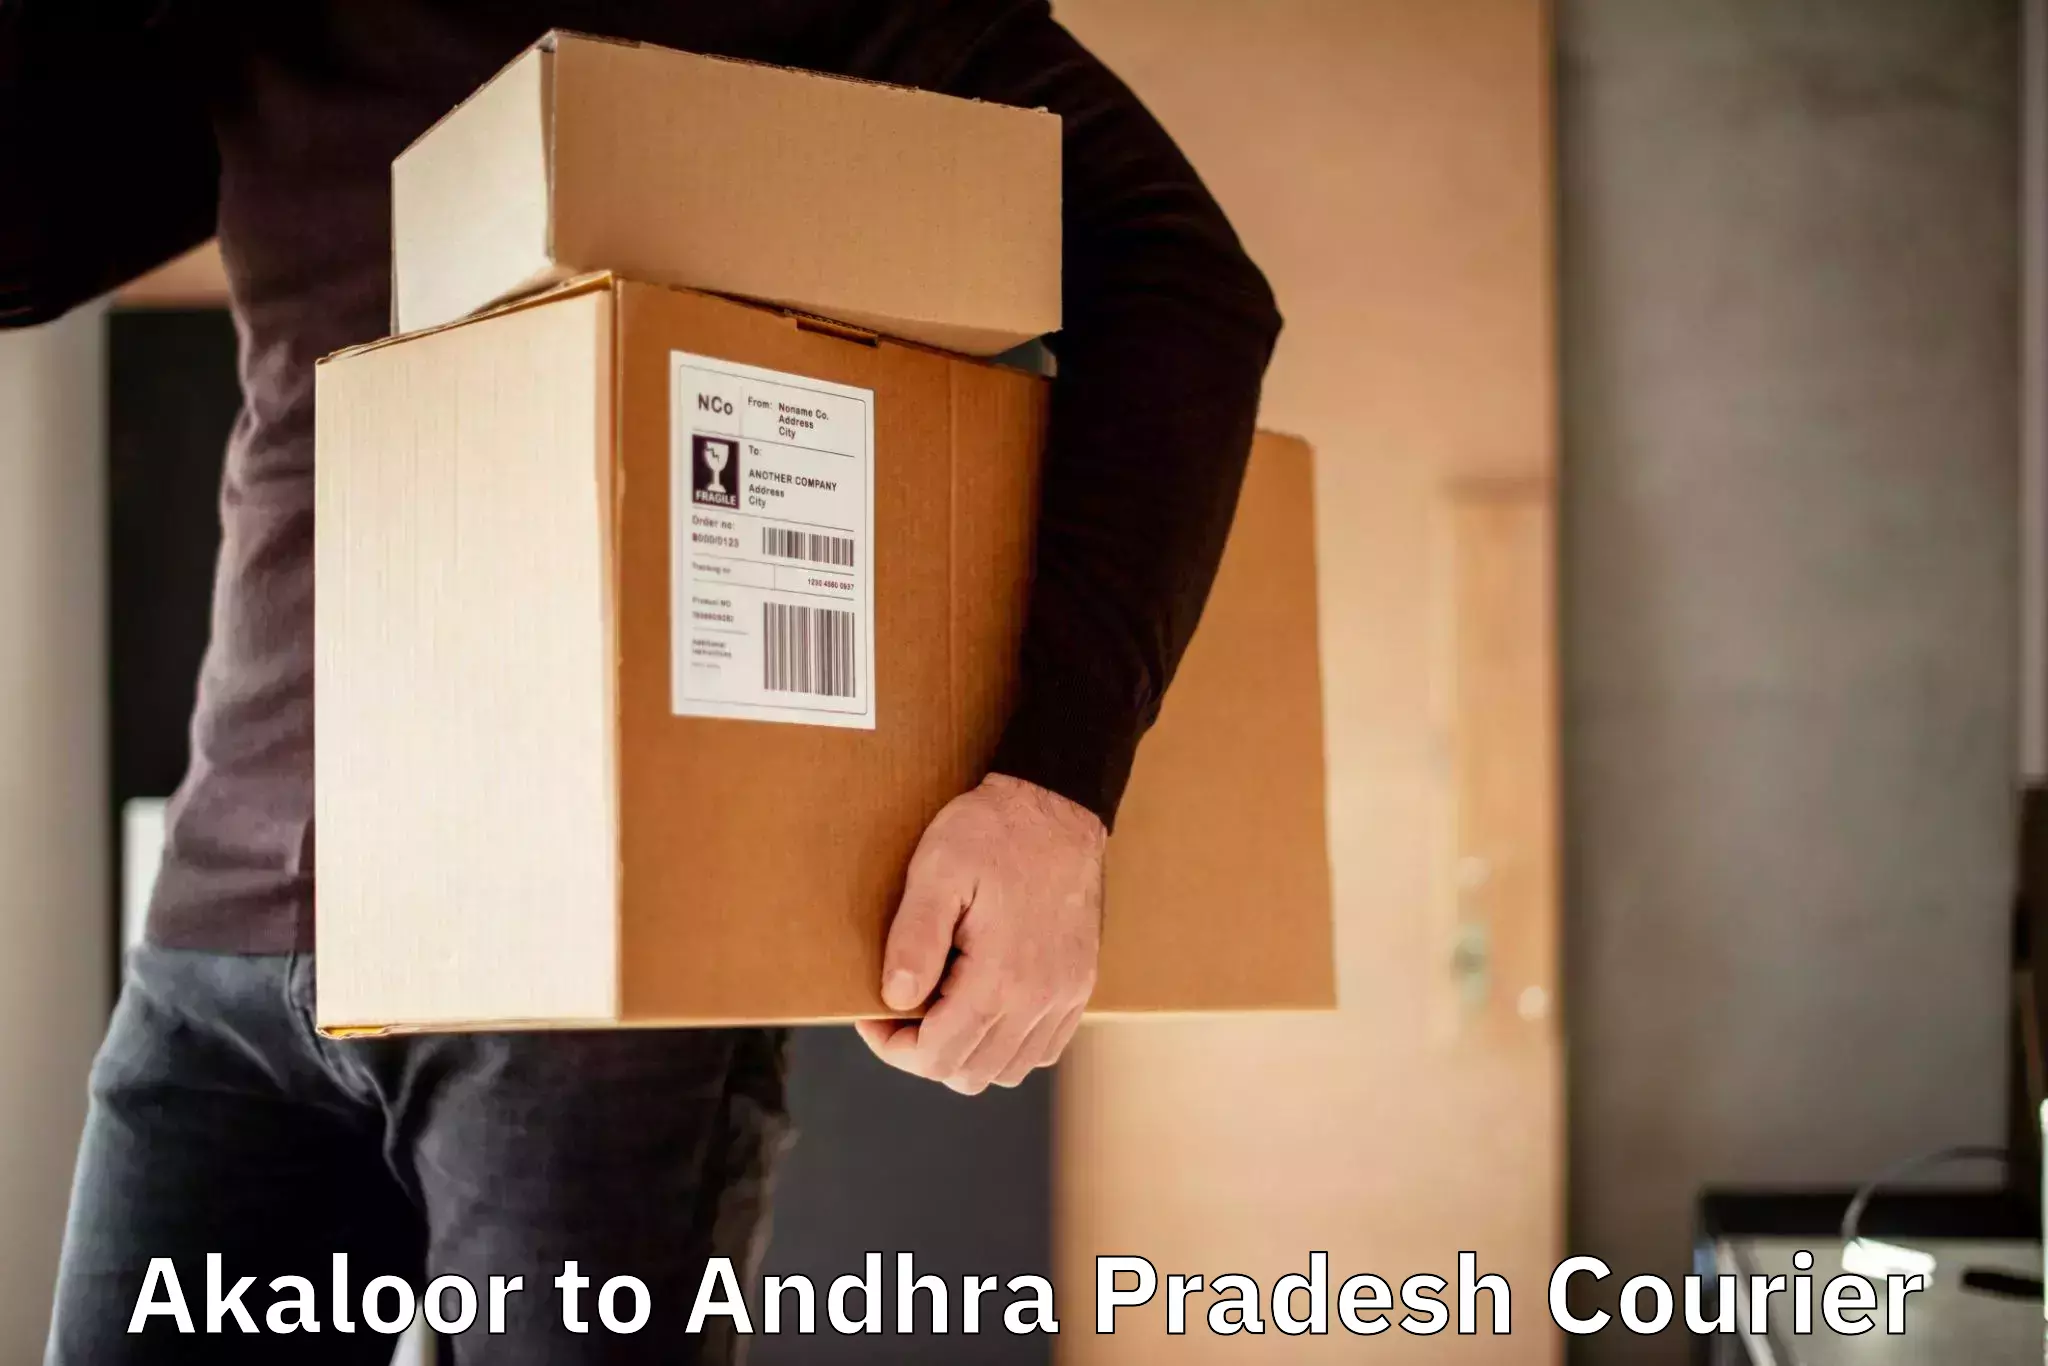 Package delivery network Akaloor to Venkatagiri